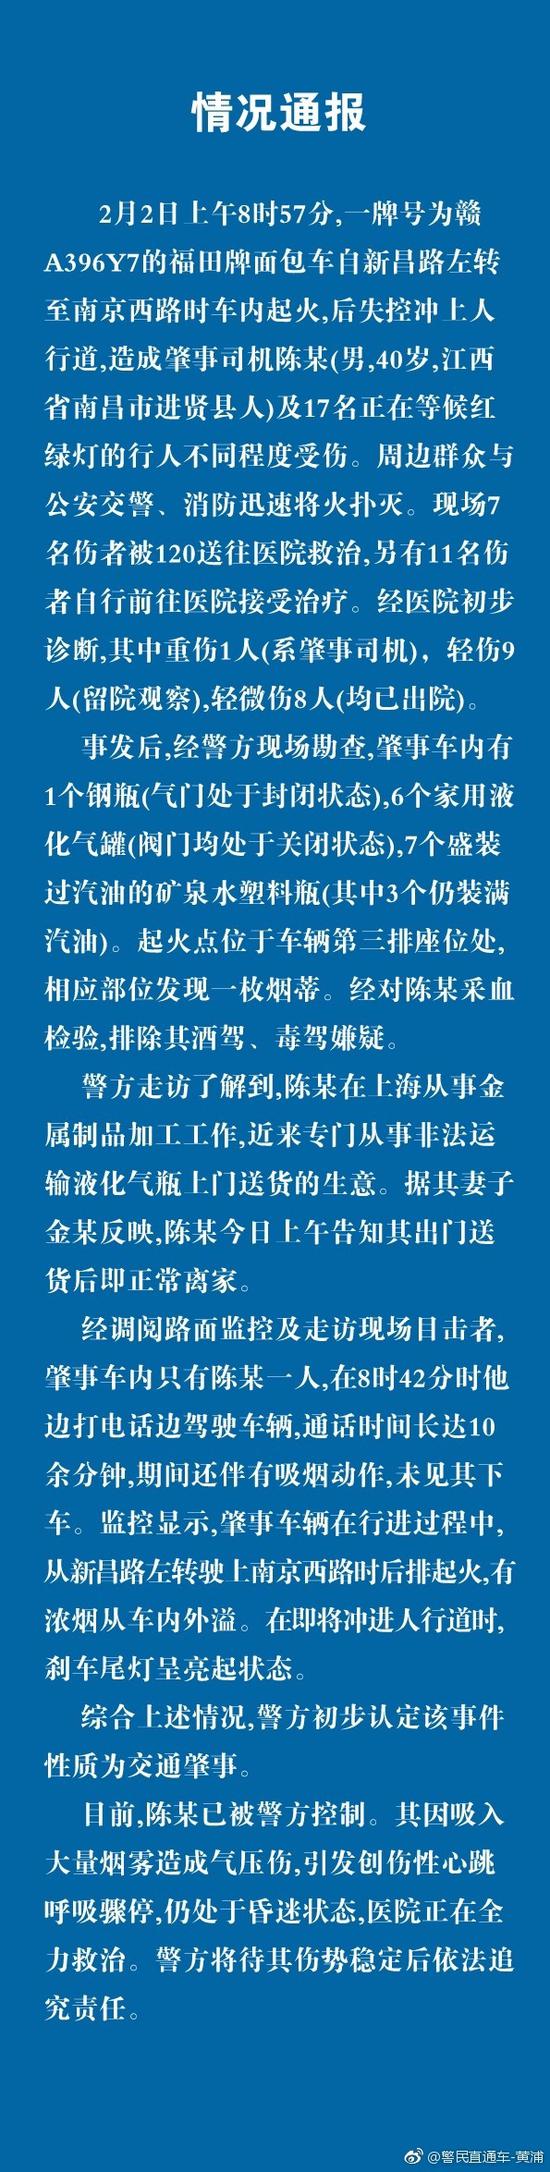 政府网站:上海警方通报面包车起火撞路人：起火处发现烟蒂